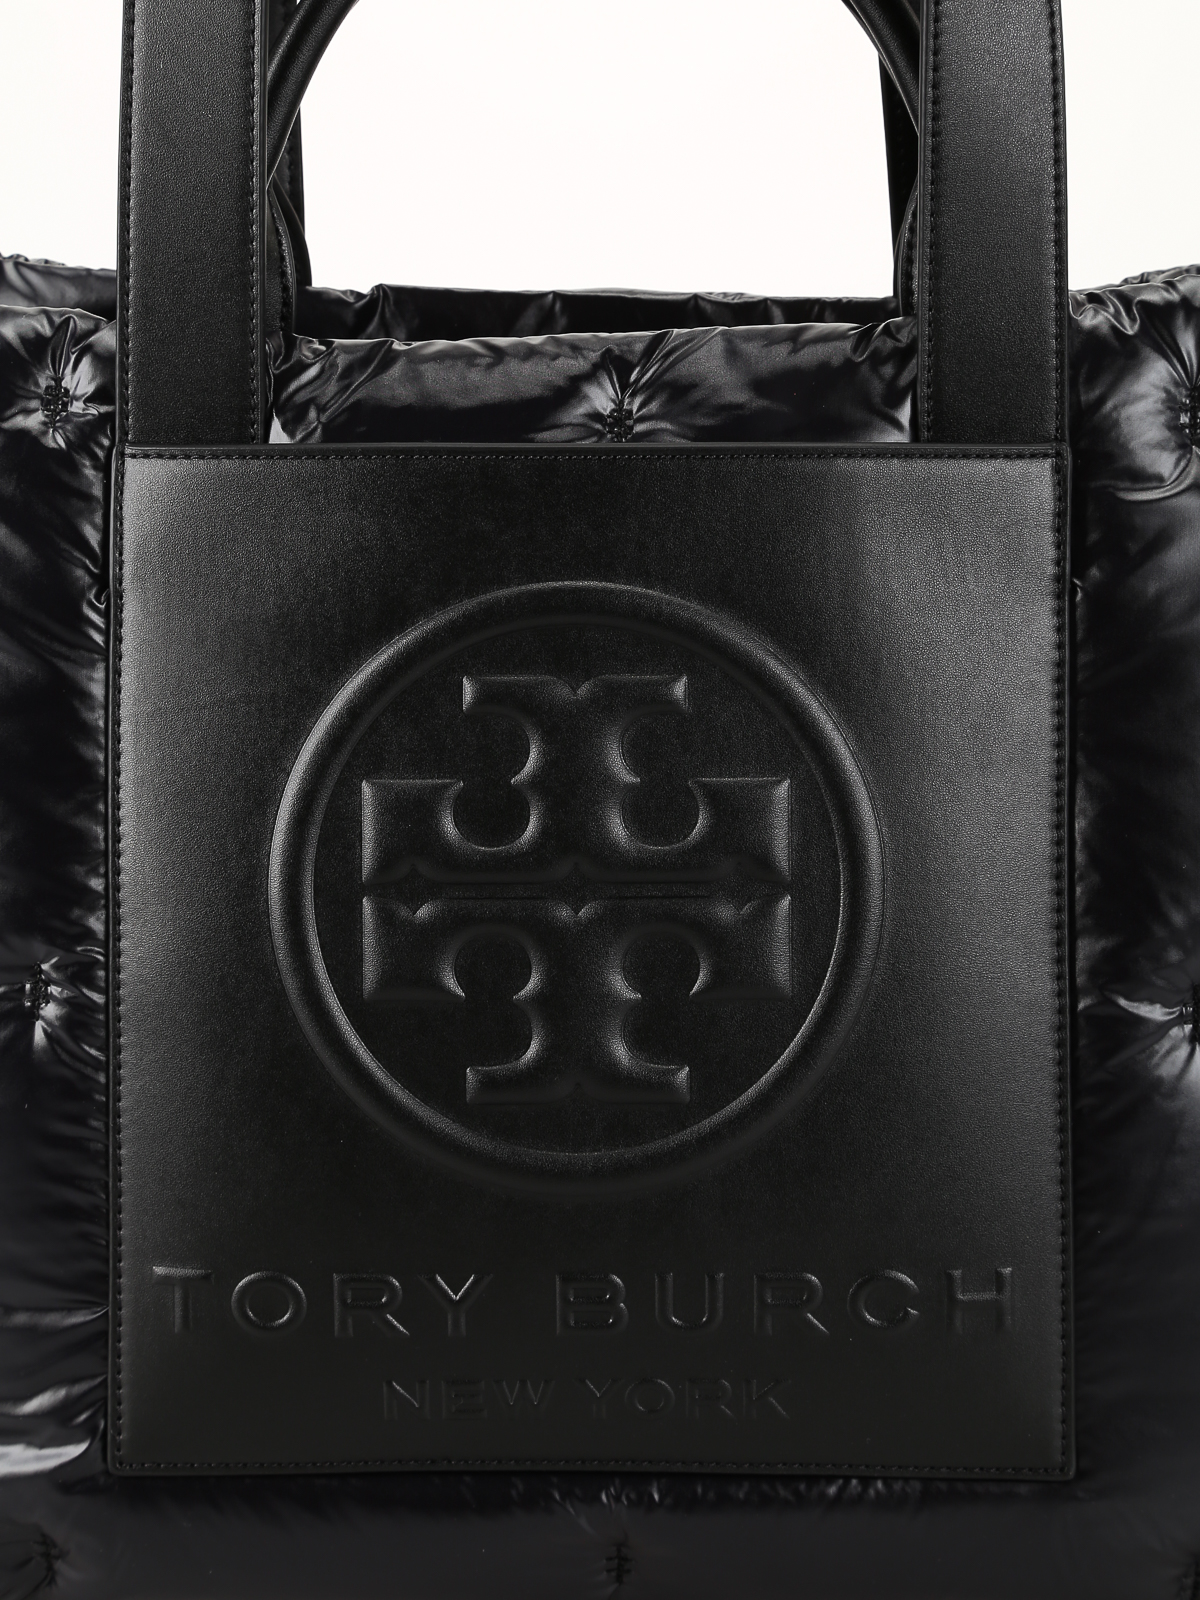 TORY BURCH Tory Black Nylon Tote Bag